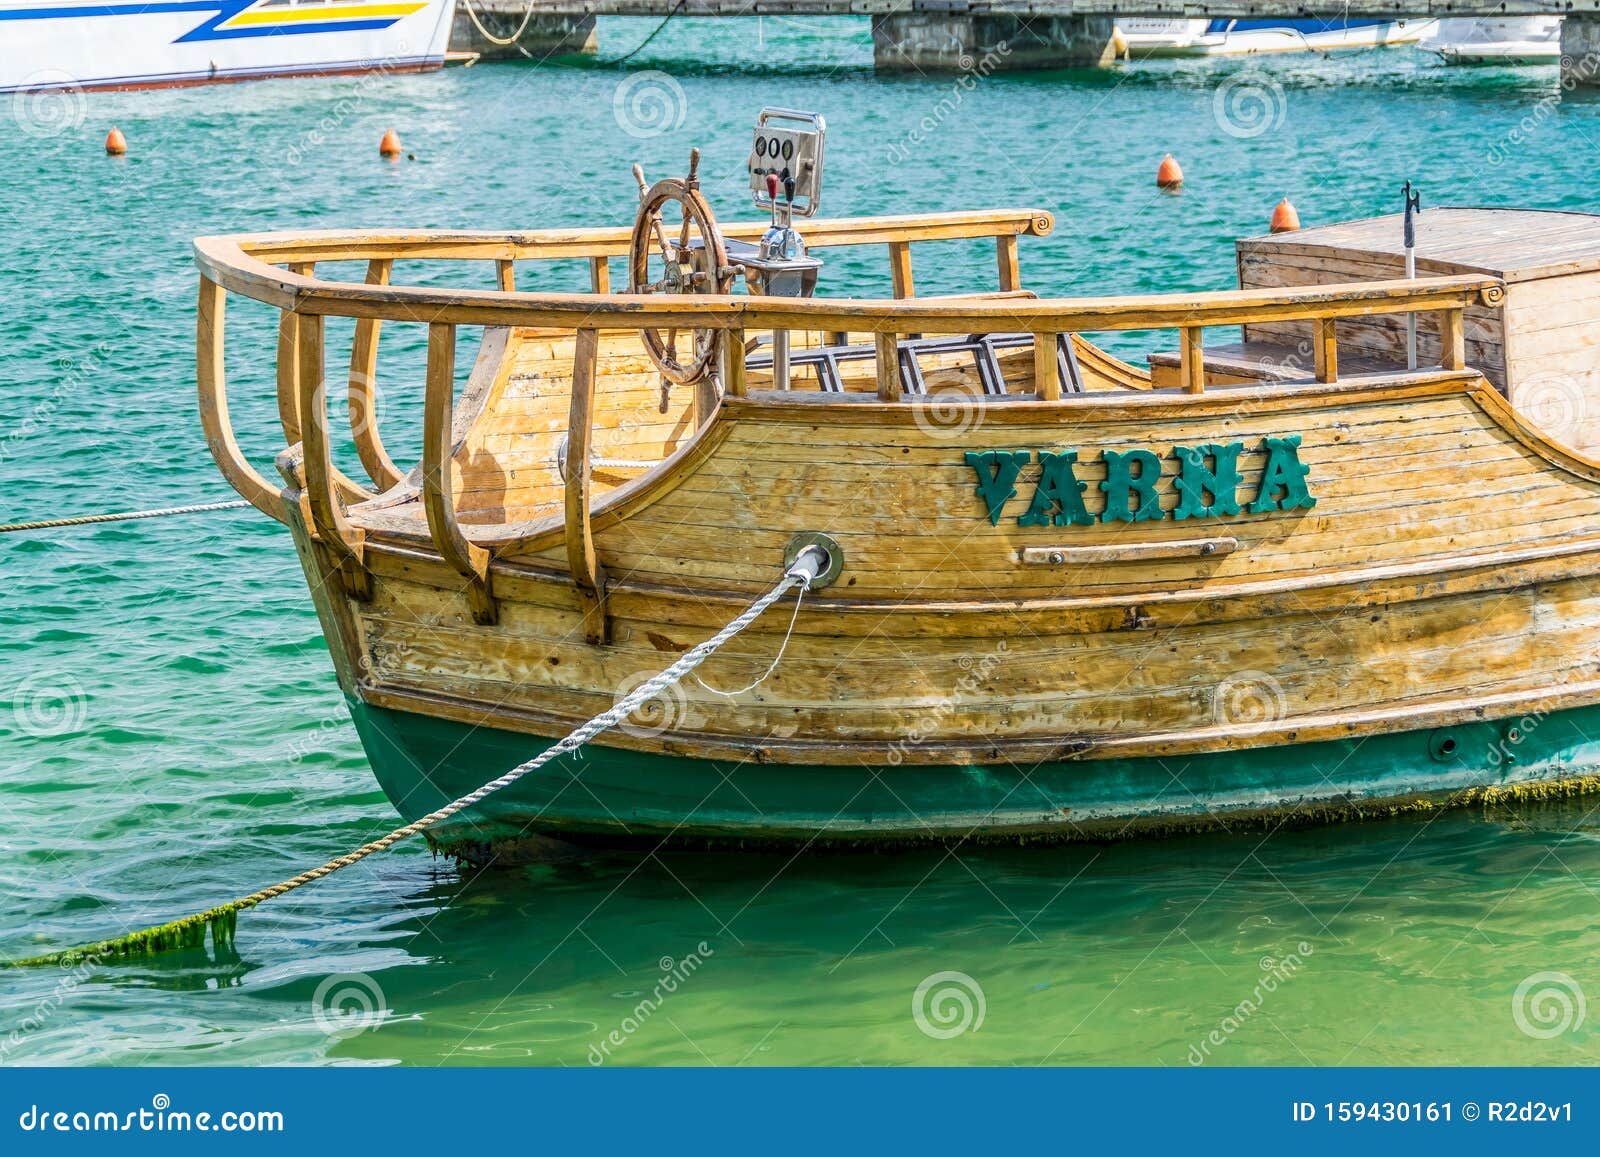 Warna — stary drewniany pirat. Bliski widok starego, zacofanego, drewnianego pirata statku Warna z otwartą sterówką na molo ośrodka Golden Sands w Bułgarii Zielone algi na powierzchni wody i liny